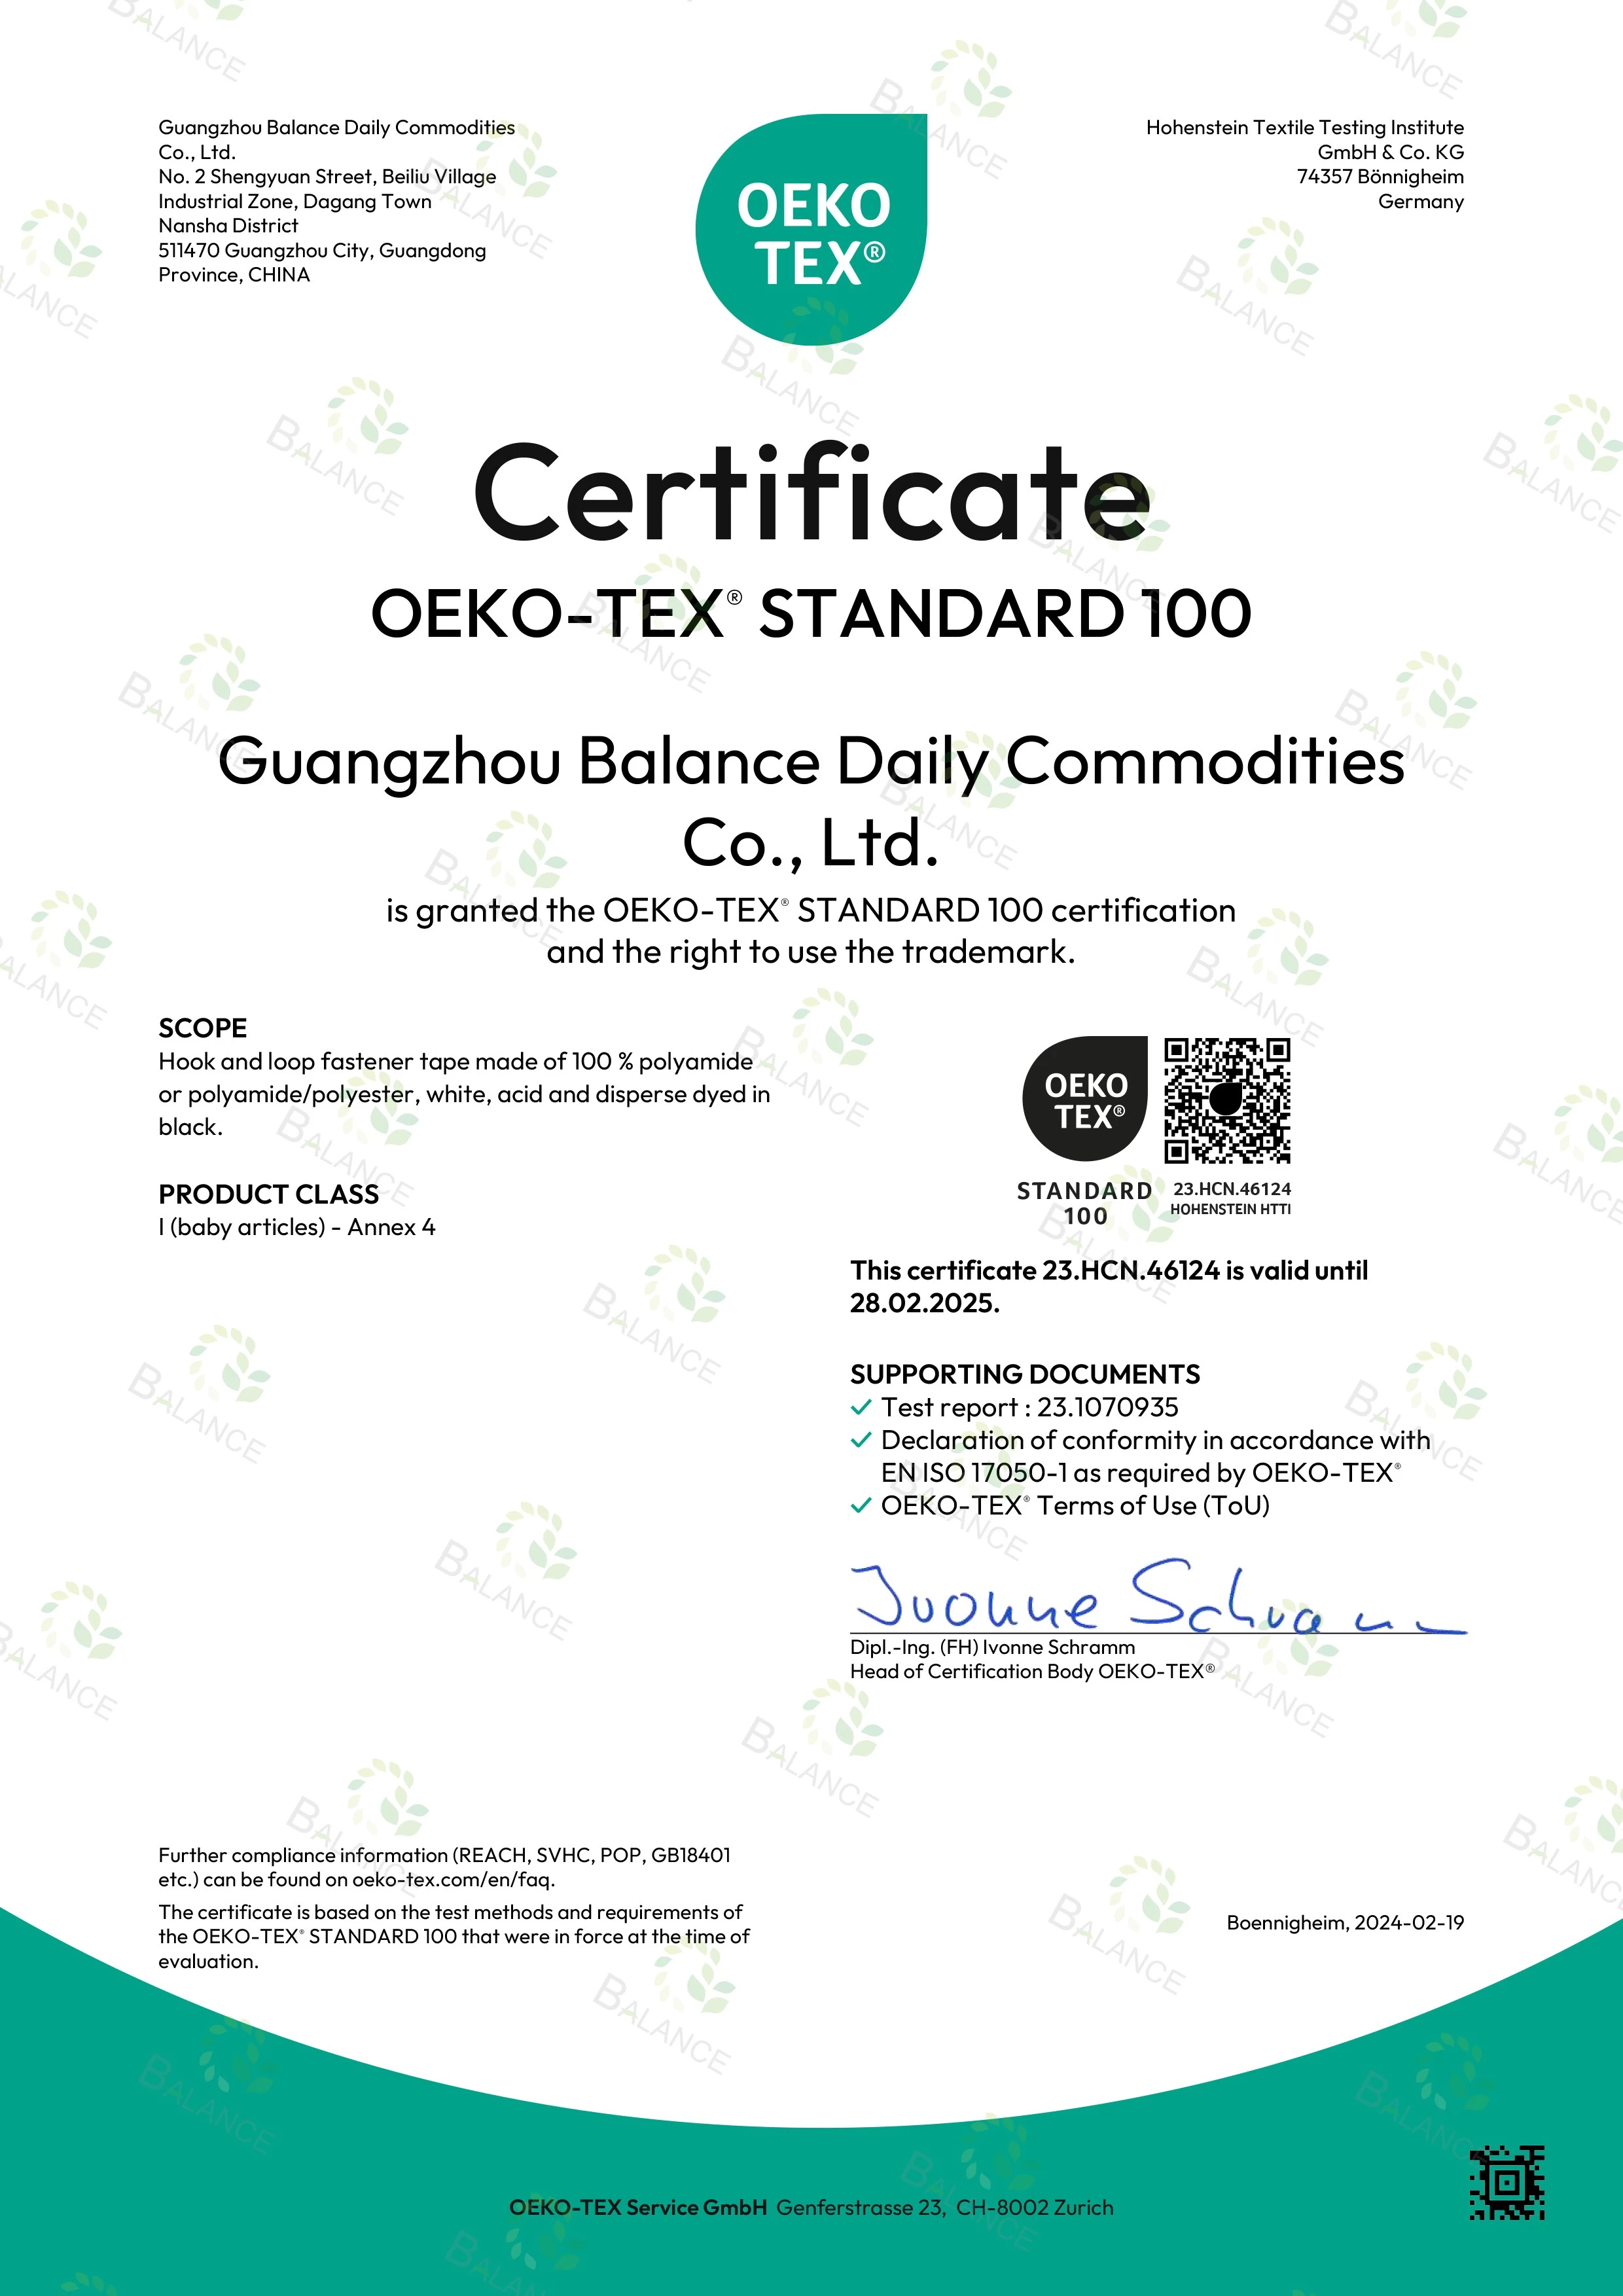 Spannende Neuigkeiten! Unsere Klettbänder haben die STANDARD 100-Zertifizierung von OEKO-TEX erhalten